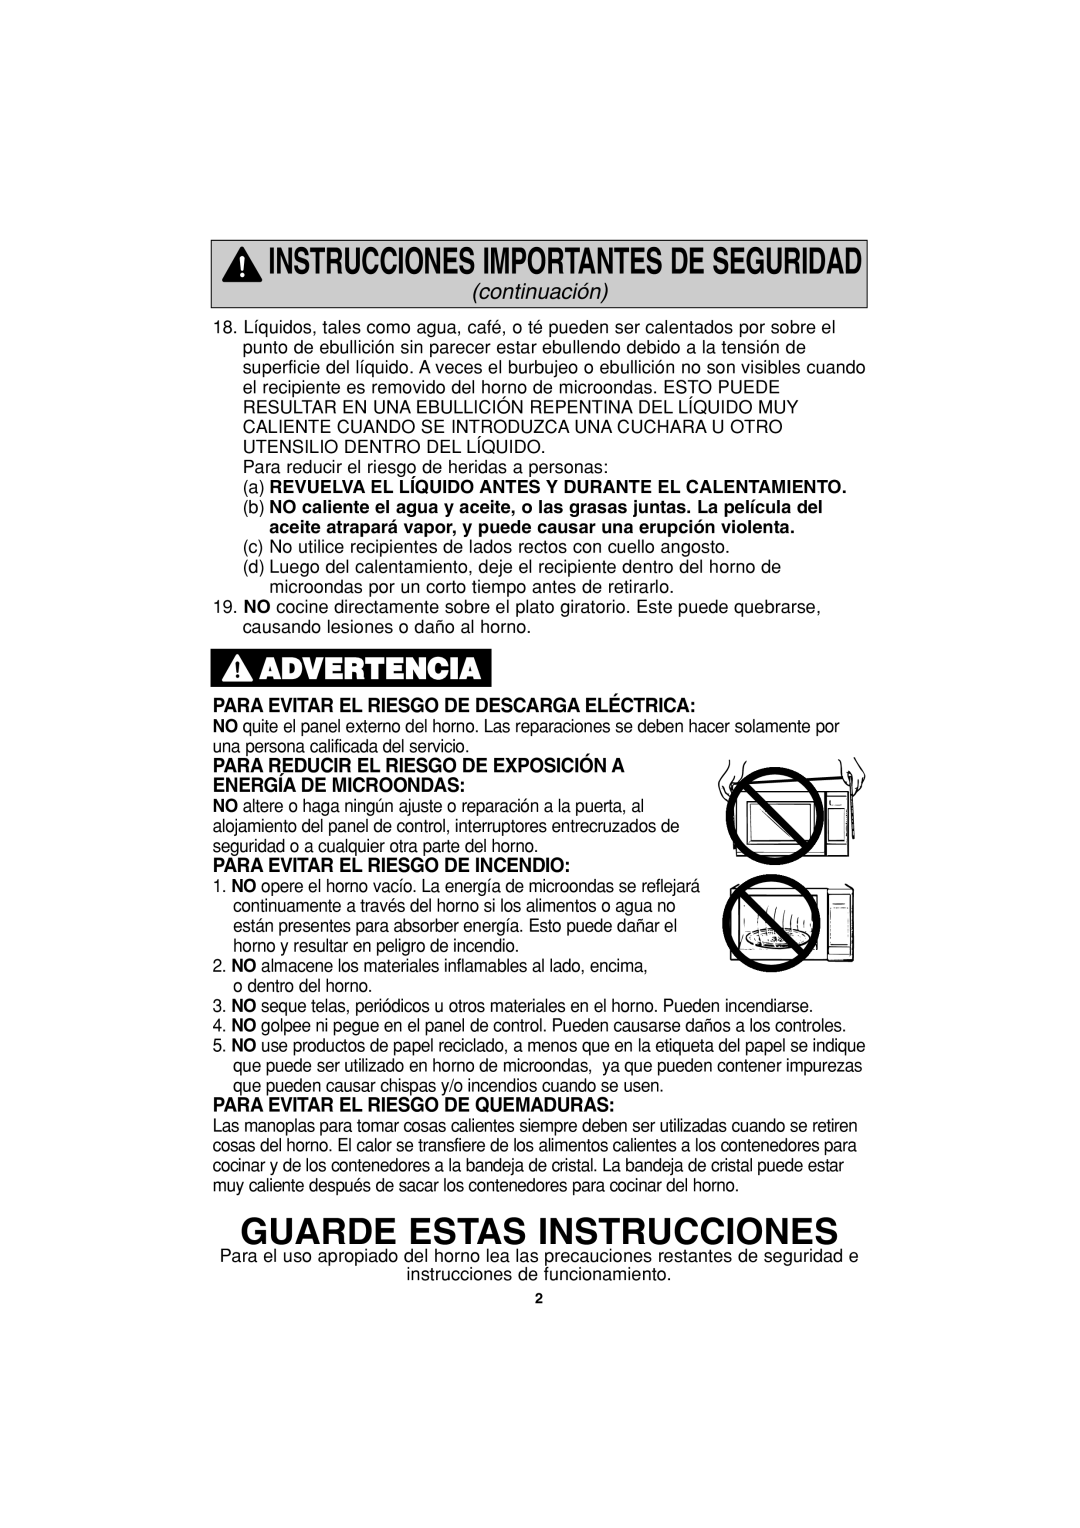 Panasonic NN-S423 Guarde Estas Instrucciones, Advertencia, Instrucciones Importantes De Seguridad, continuación 